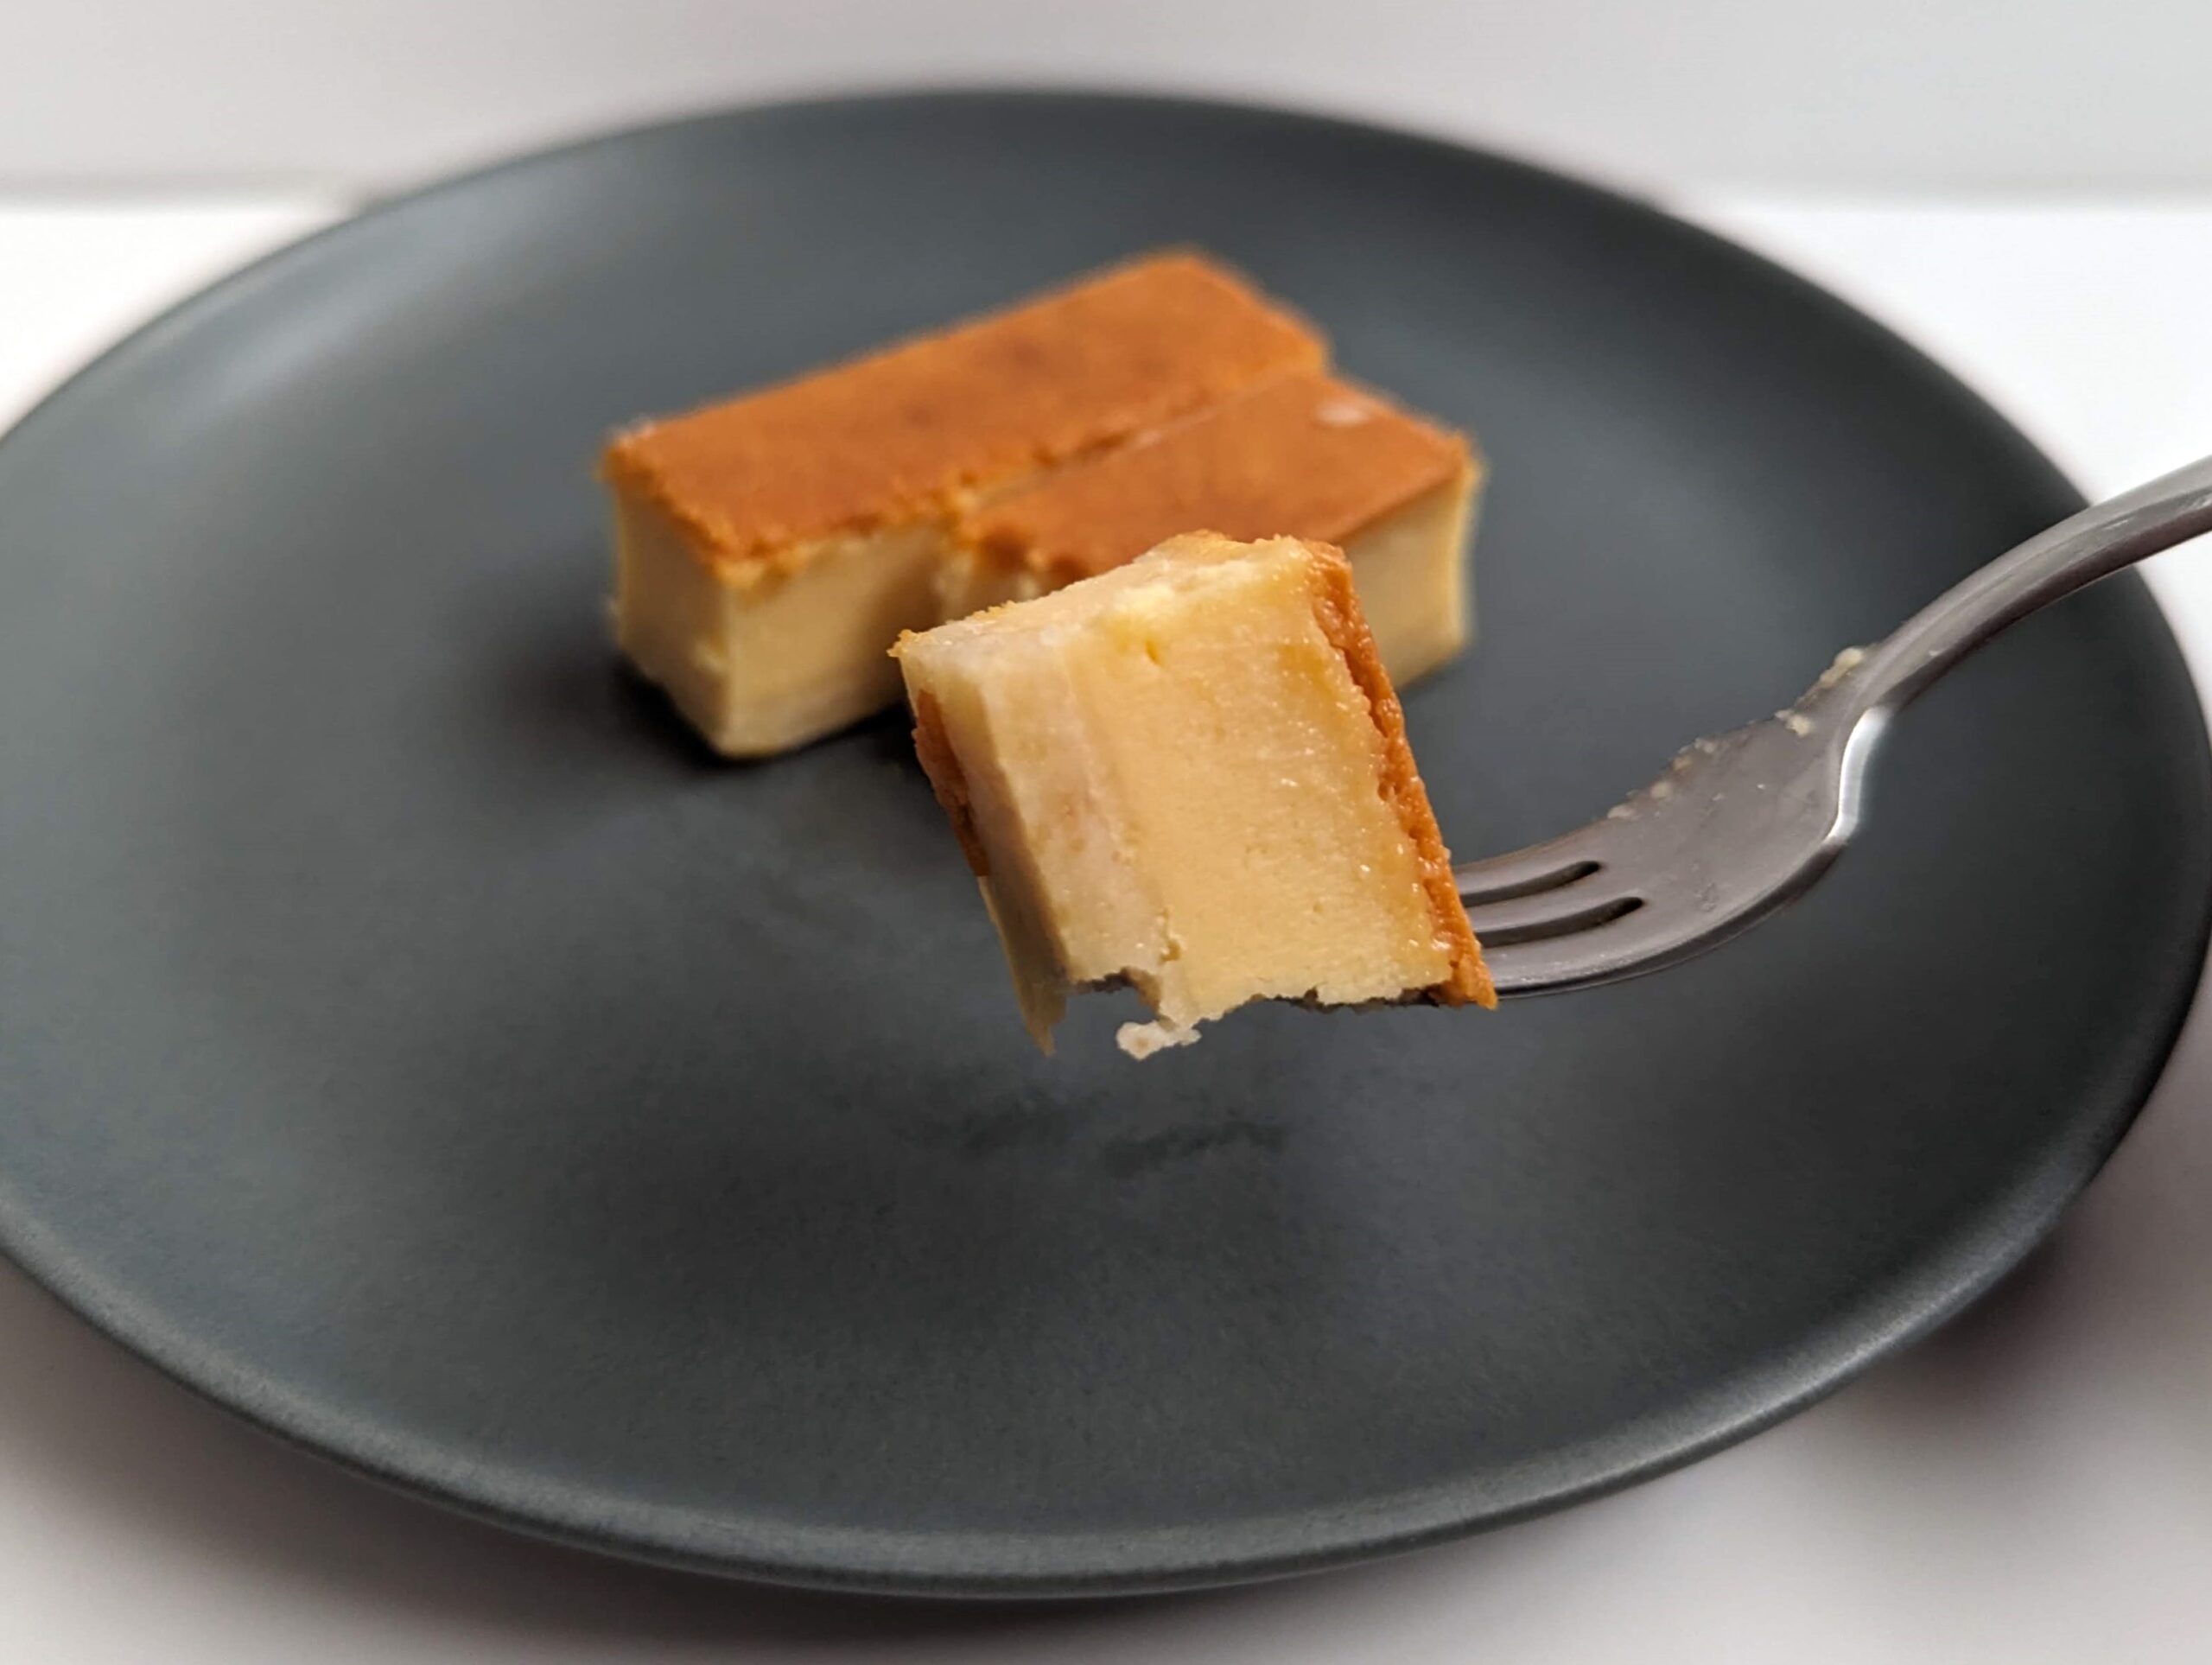 ファミリーマートで購入、ル・フレンド「ミニベイクドチーズケーキ」の写真 (1)